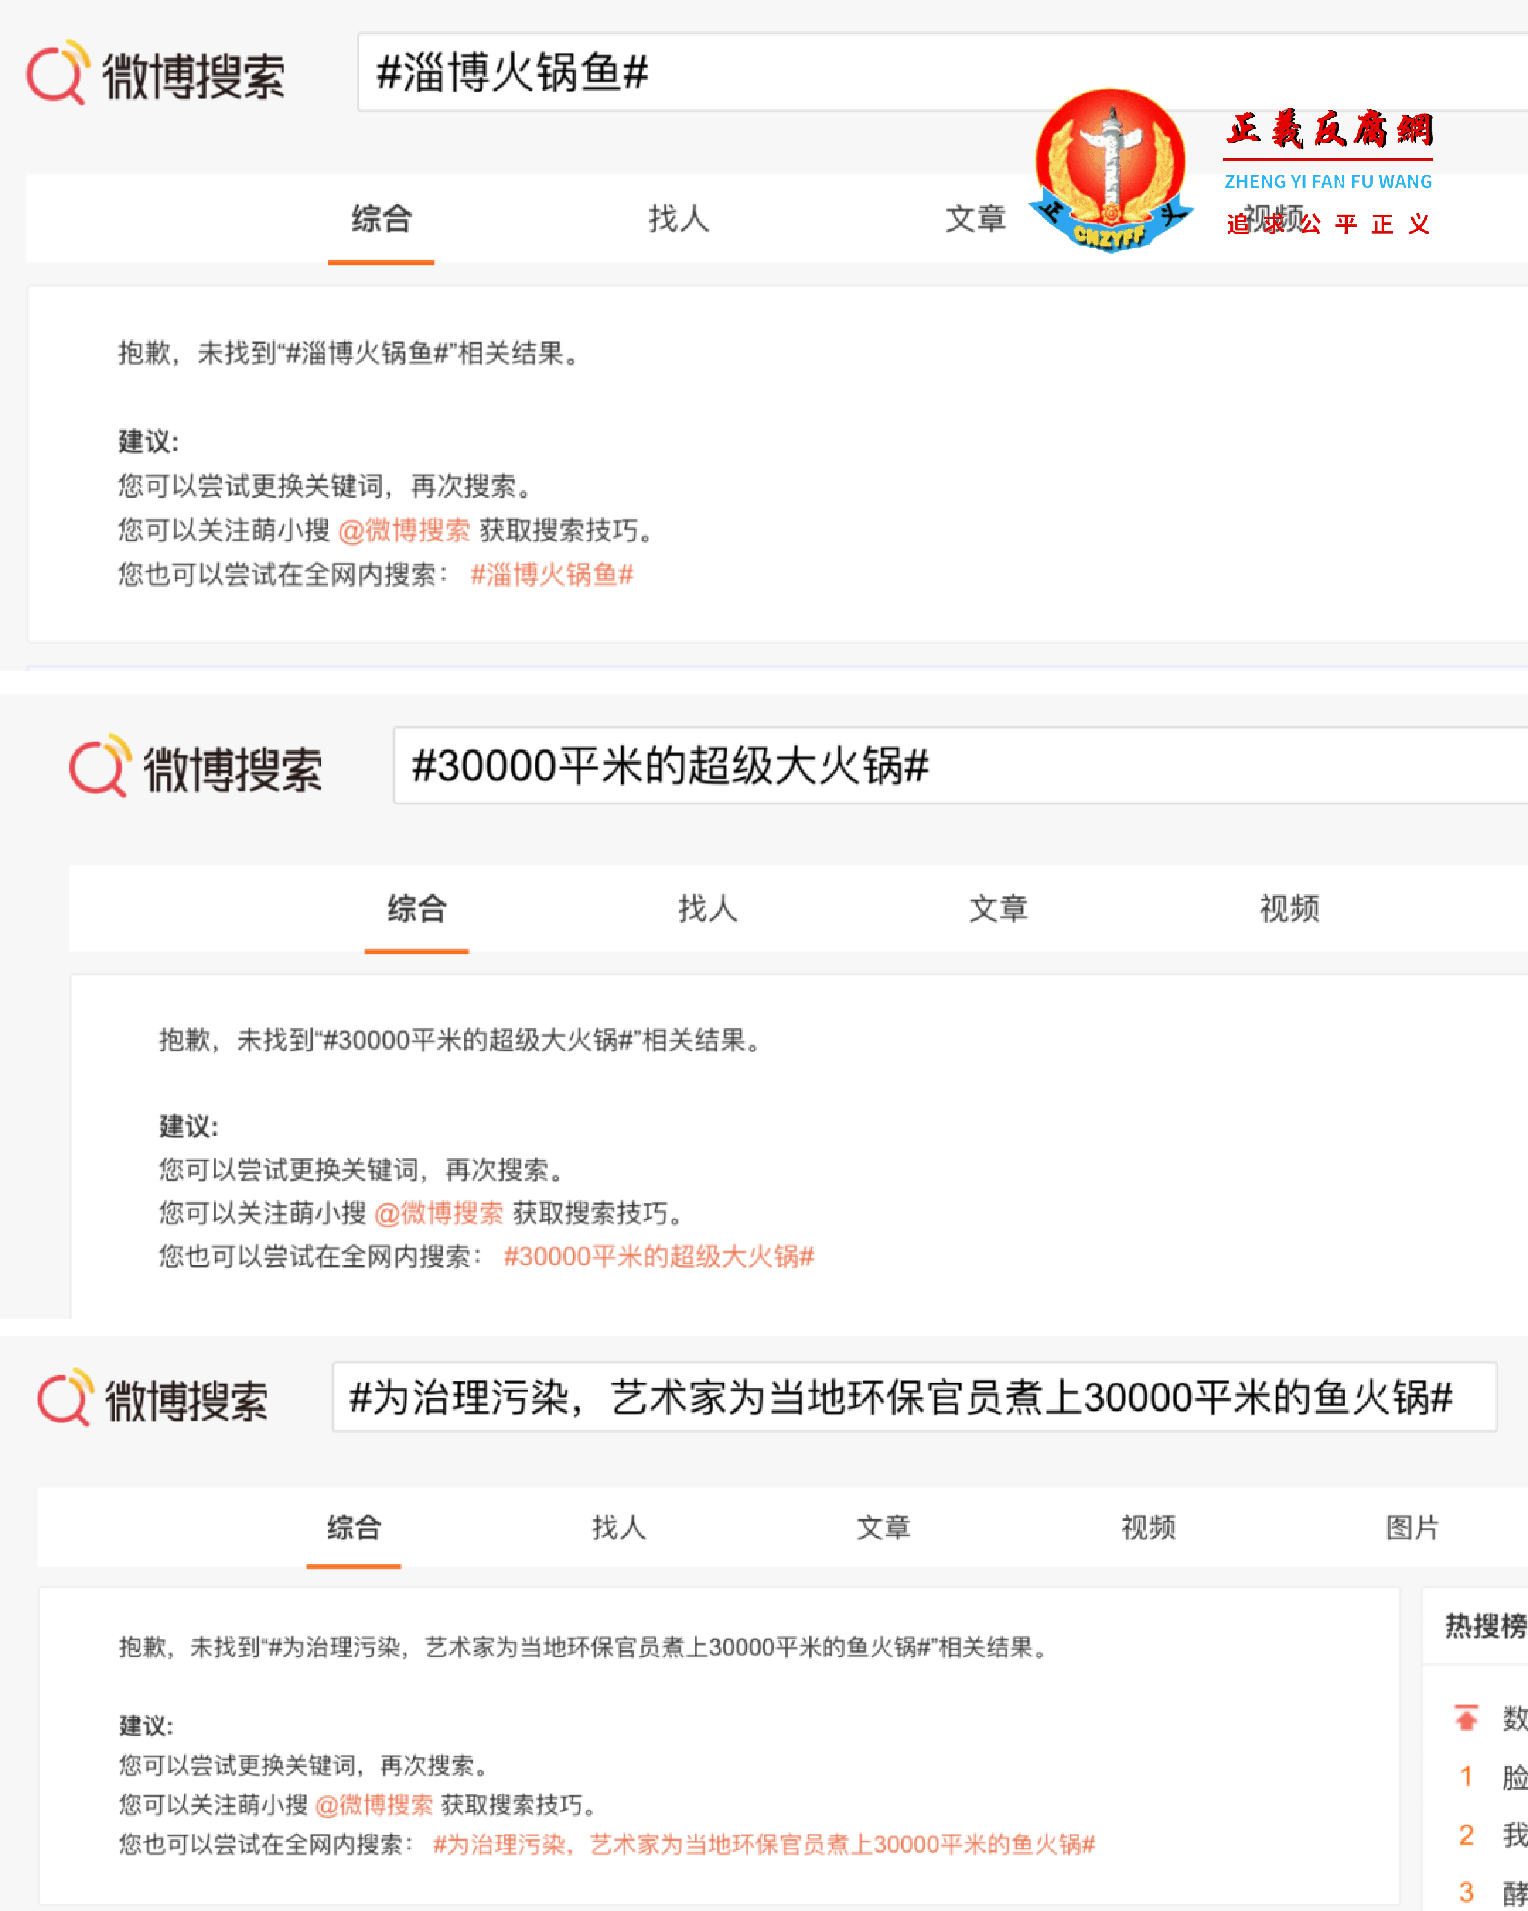 微博搜索上“淄博火锅鱼”等相关词被封锁话题.png